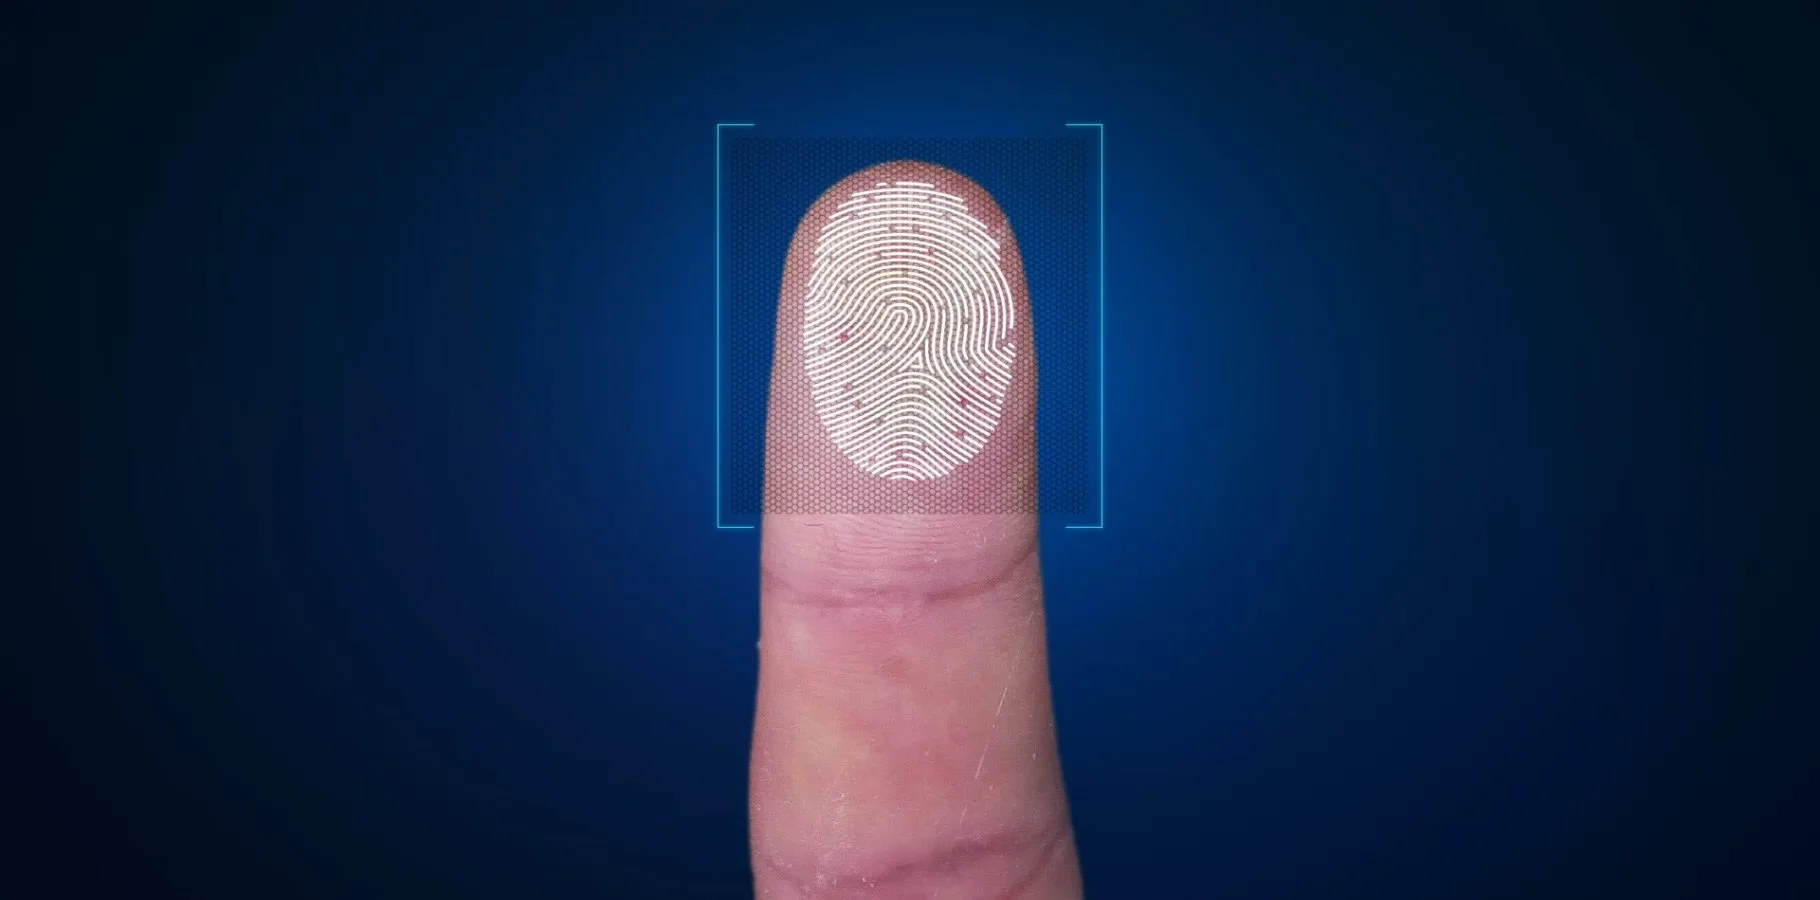 Samsung Galaxy Note9 получит первый сканер отпечатка пальца в стекле. Наконец-то!  - фото 1